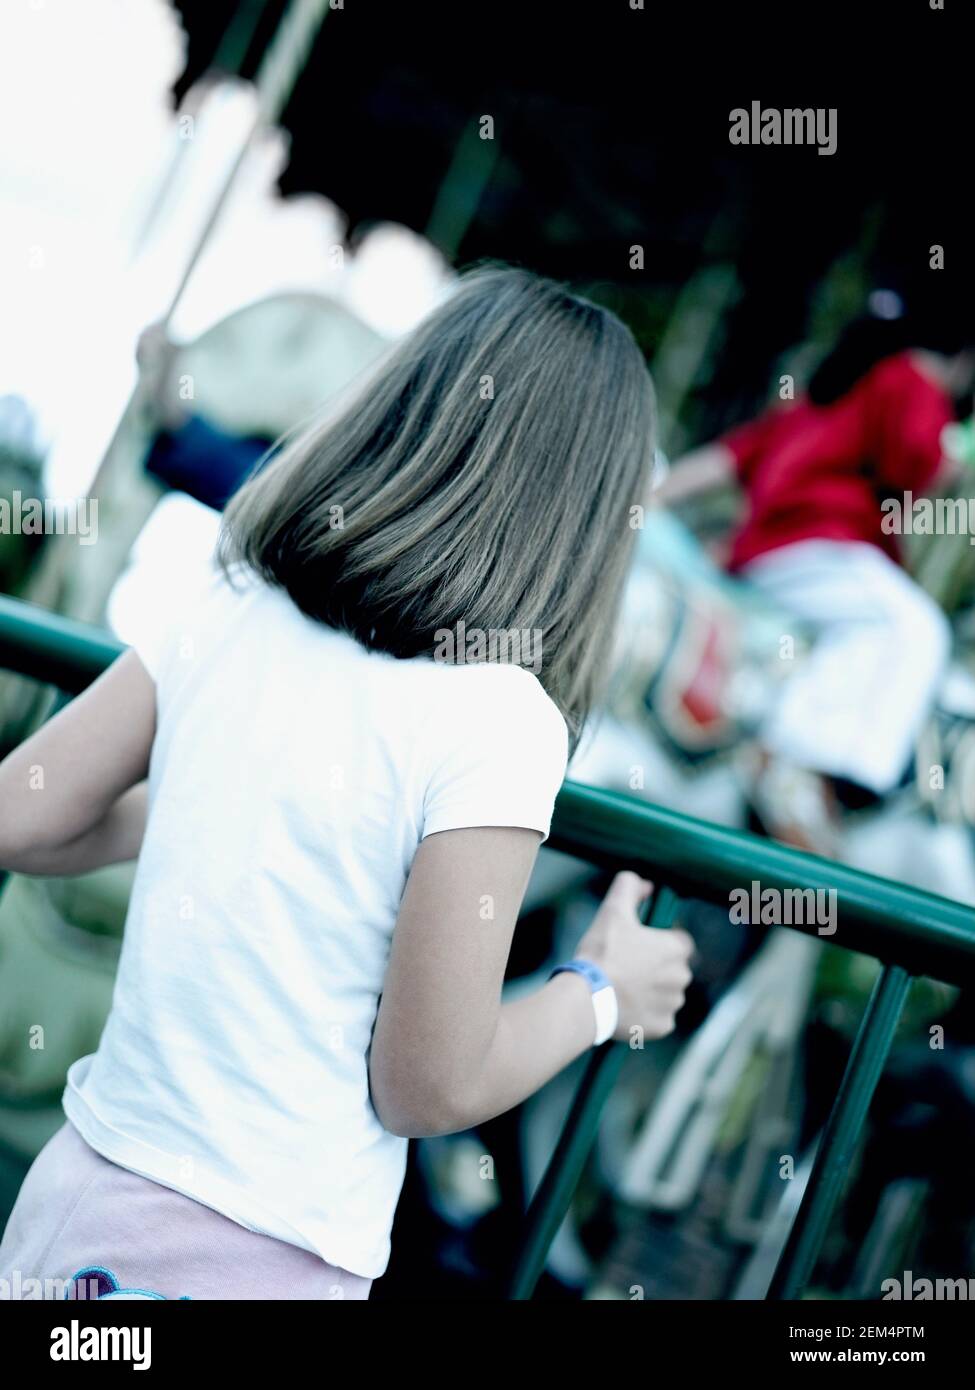 Rückansicht eines Mädchens, das in der Nähe eines Karussells steht Stockfoto